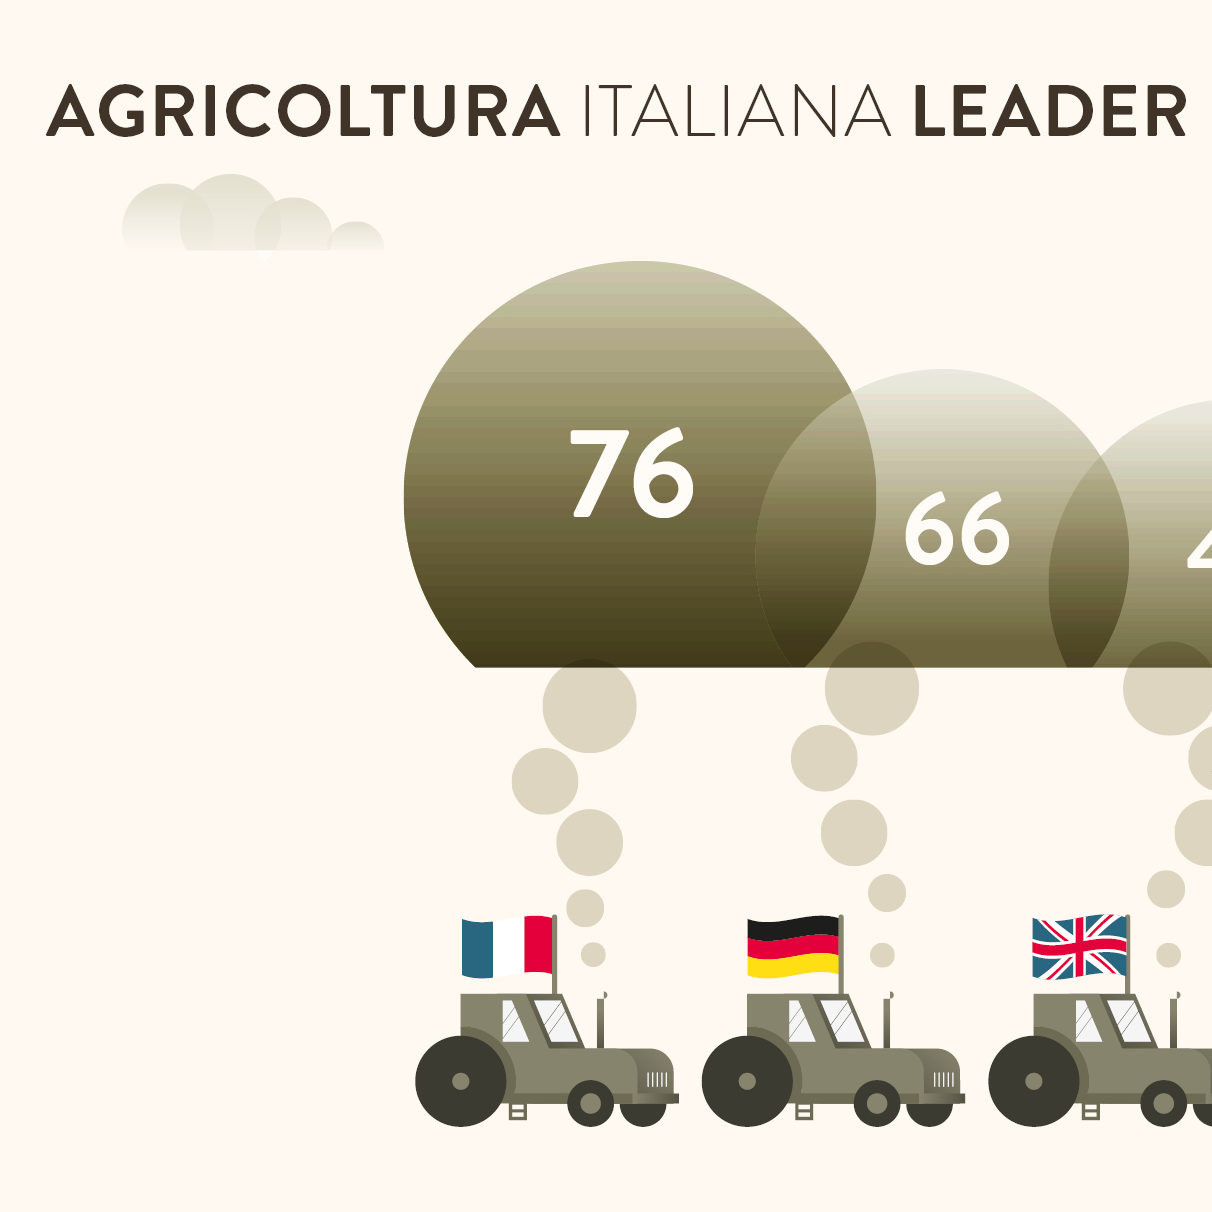 Agricoltura italiana leader in Europa per sostenibilità